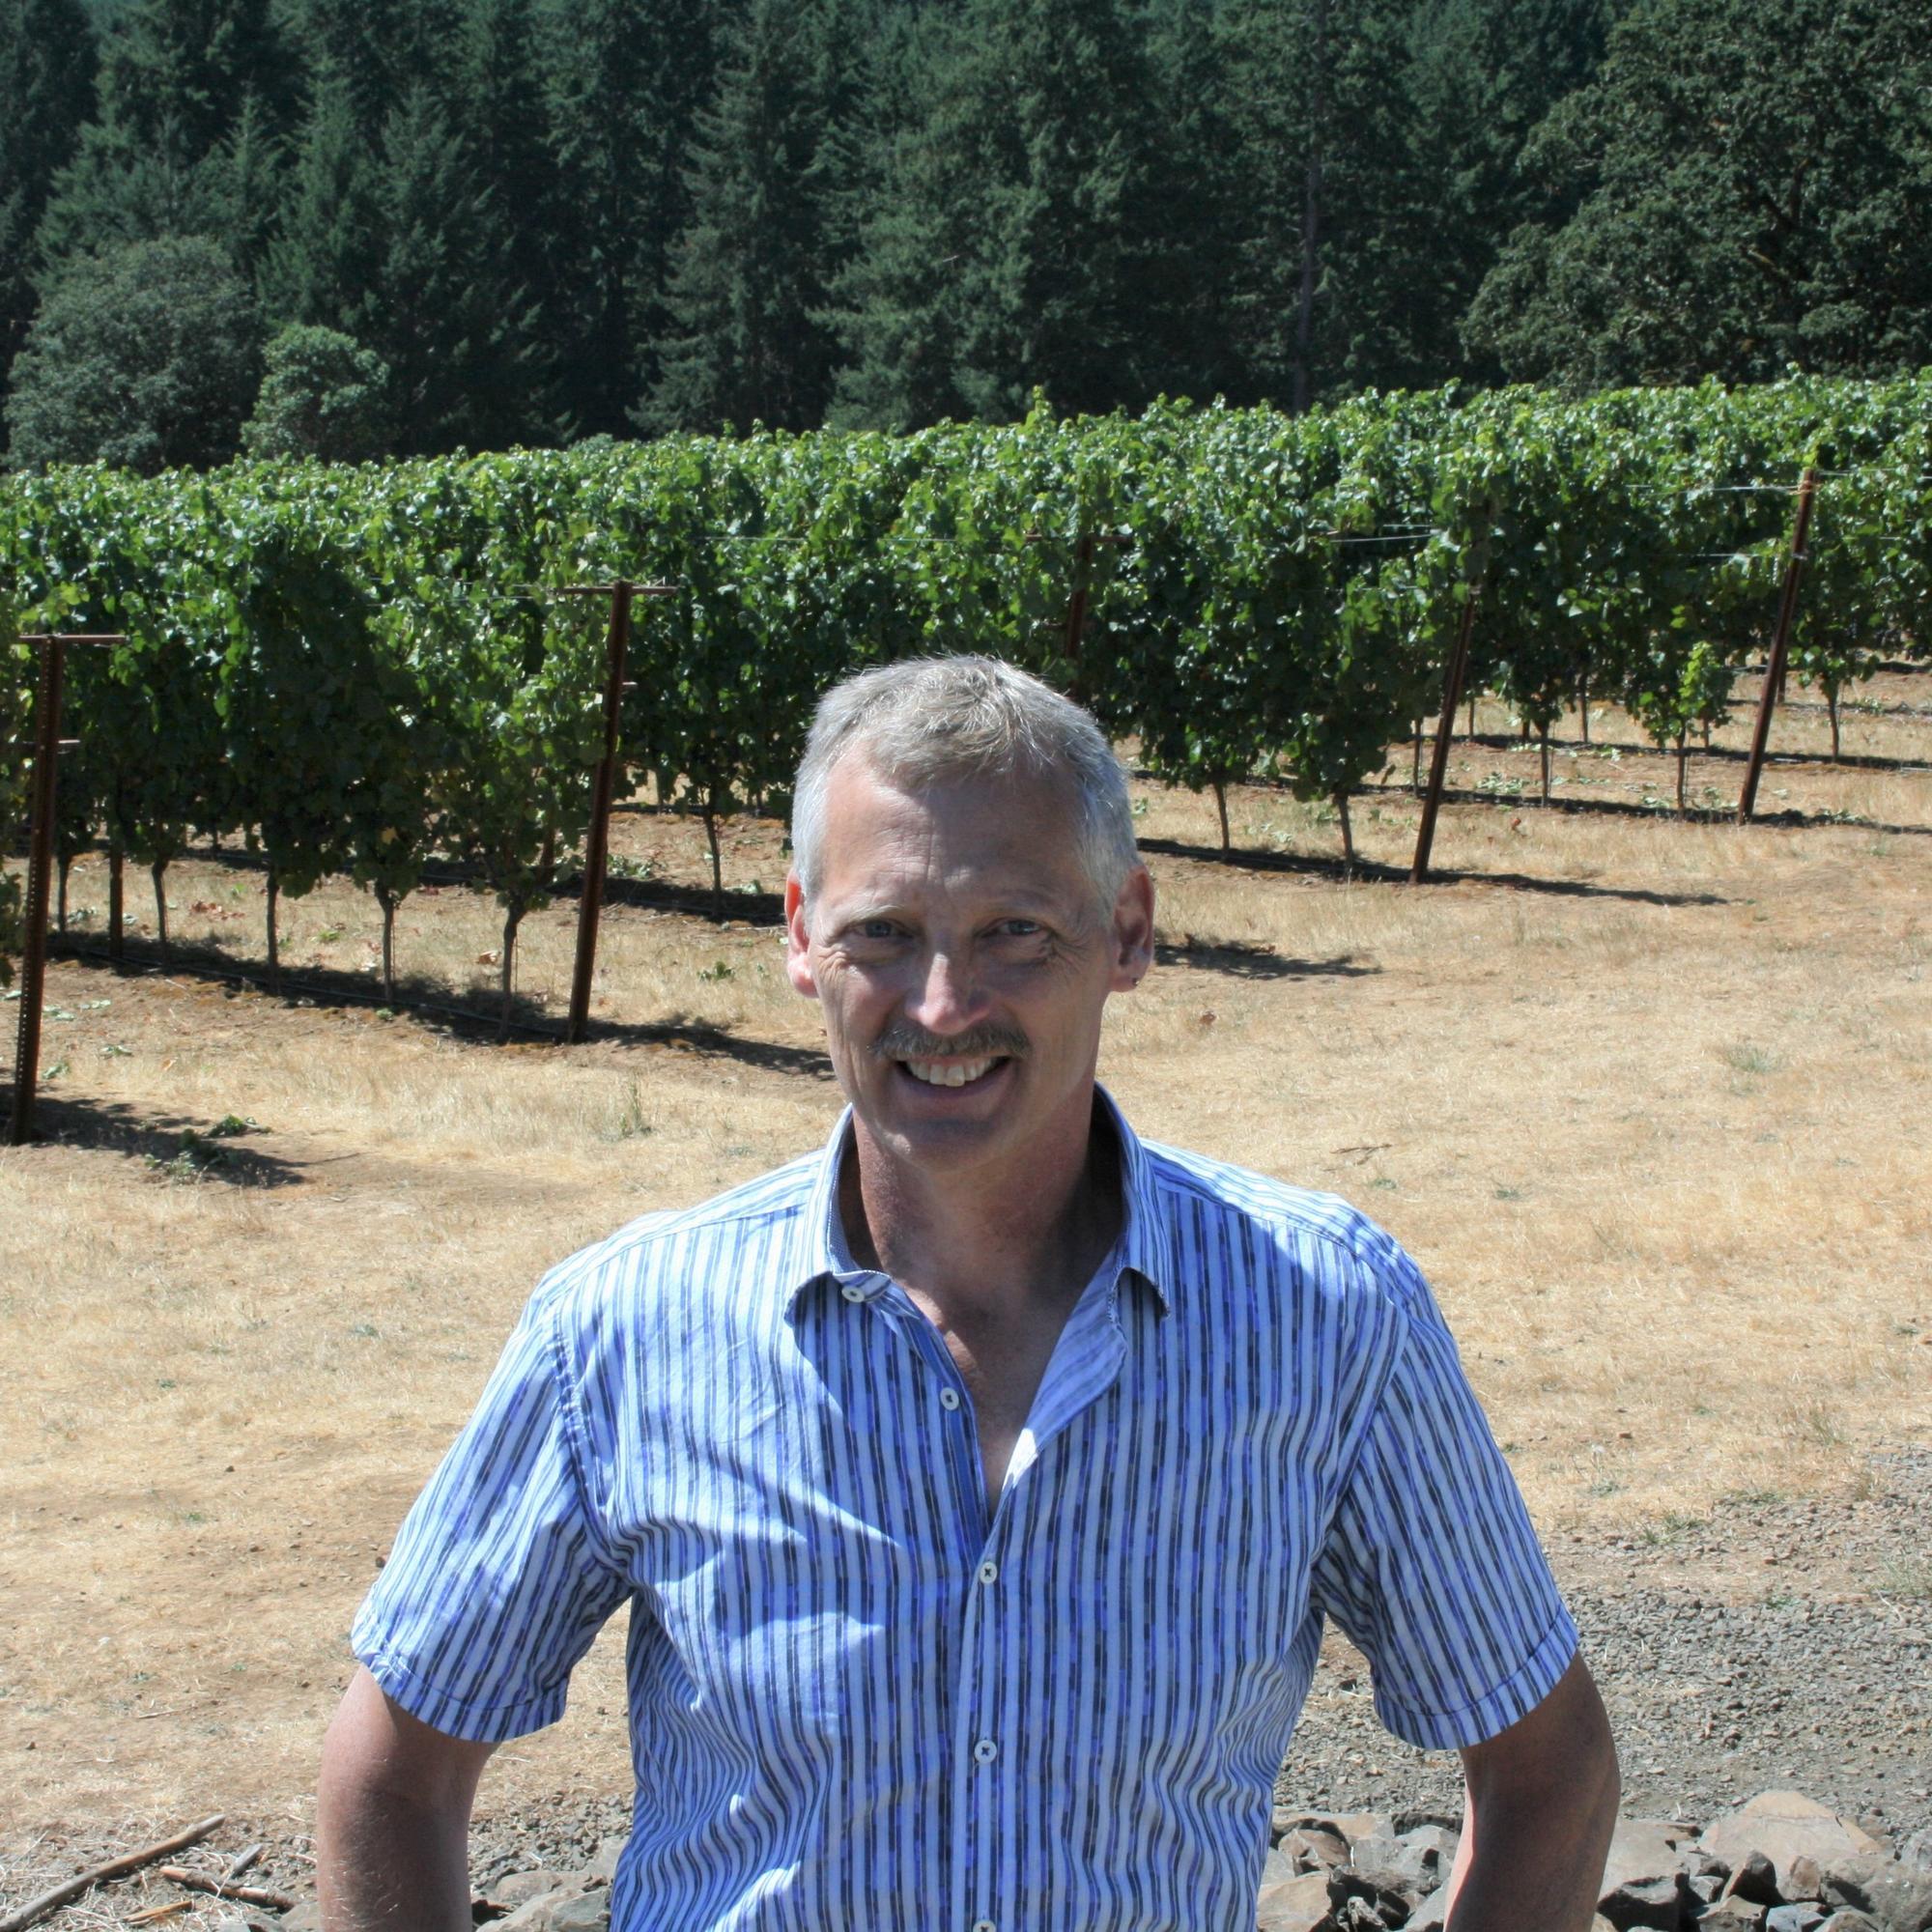 Paul Schreiner, USDA-ARS researcher standing near vineyard